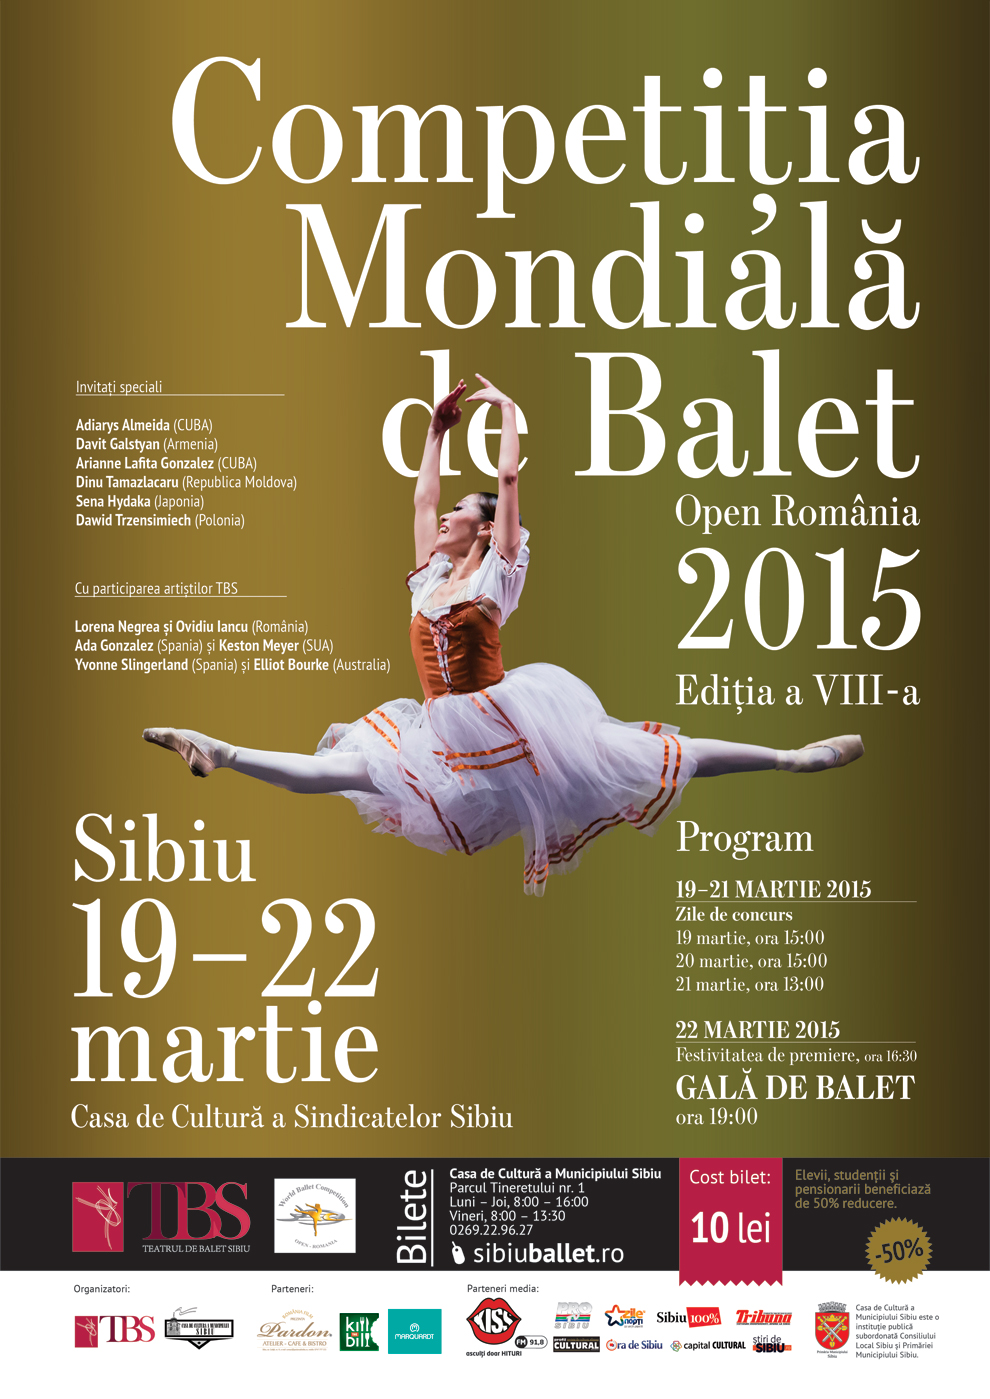 Competiția Mondială de Balet - Open România 2015 